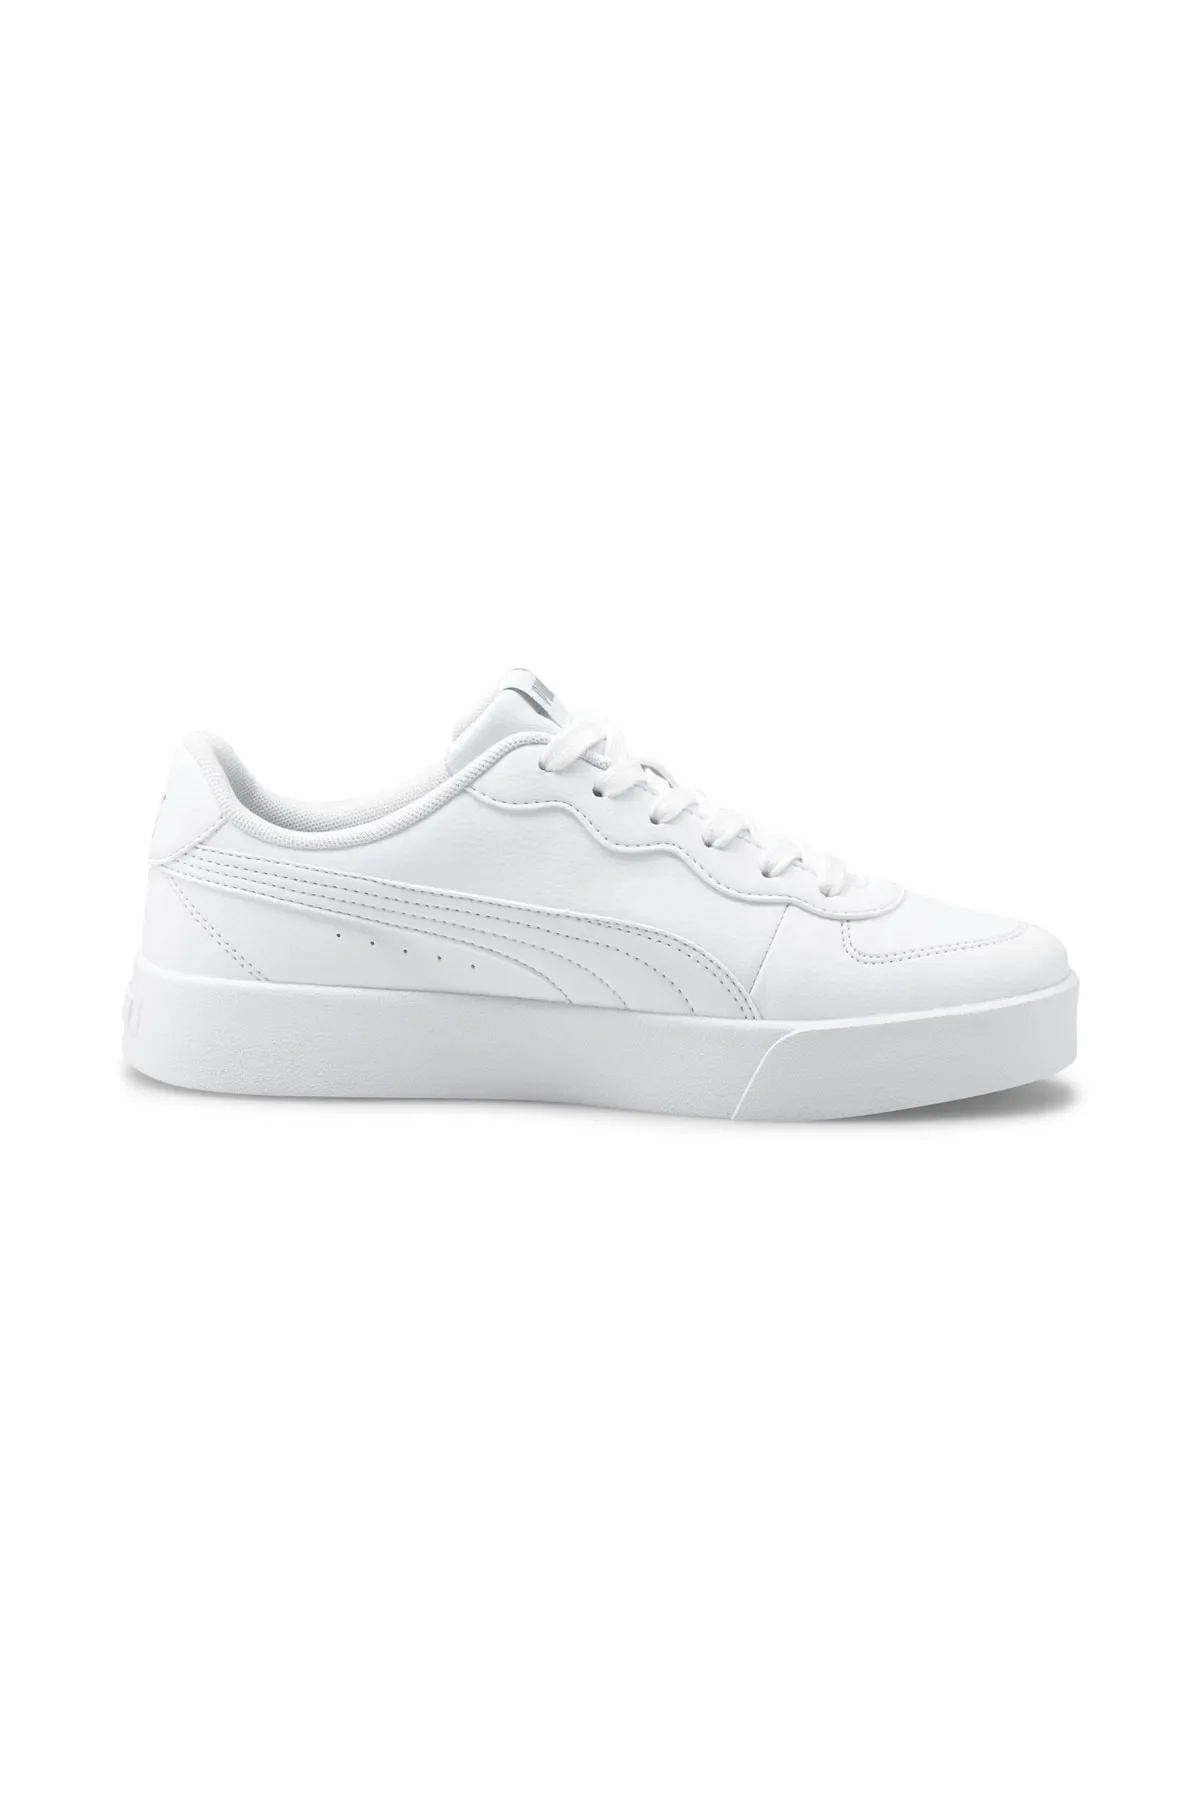 Skye Clean Kadın Spor Ayakkabı 380147-Beyaz - 2